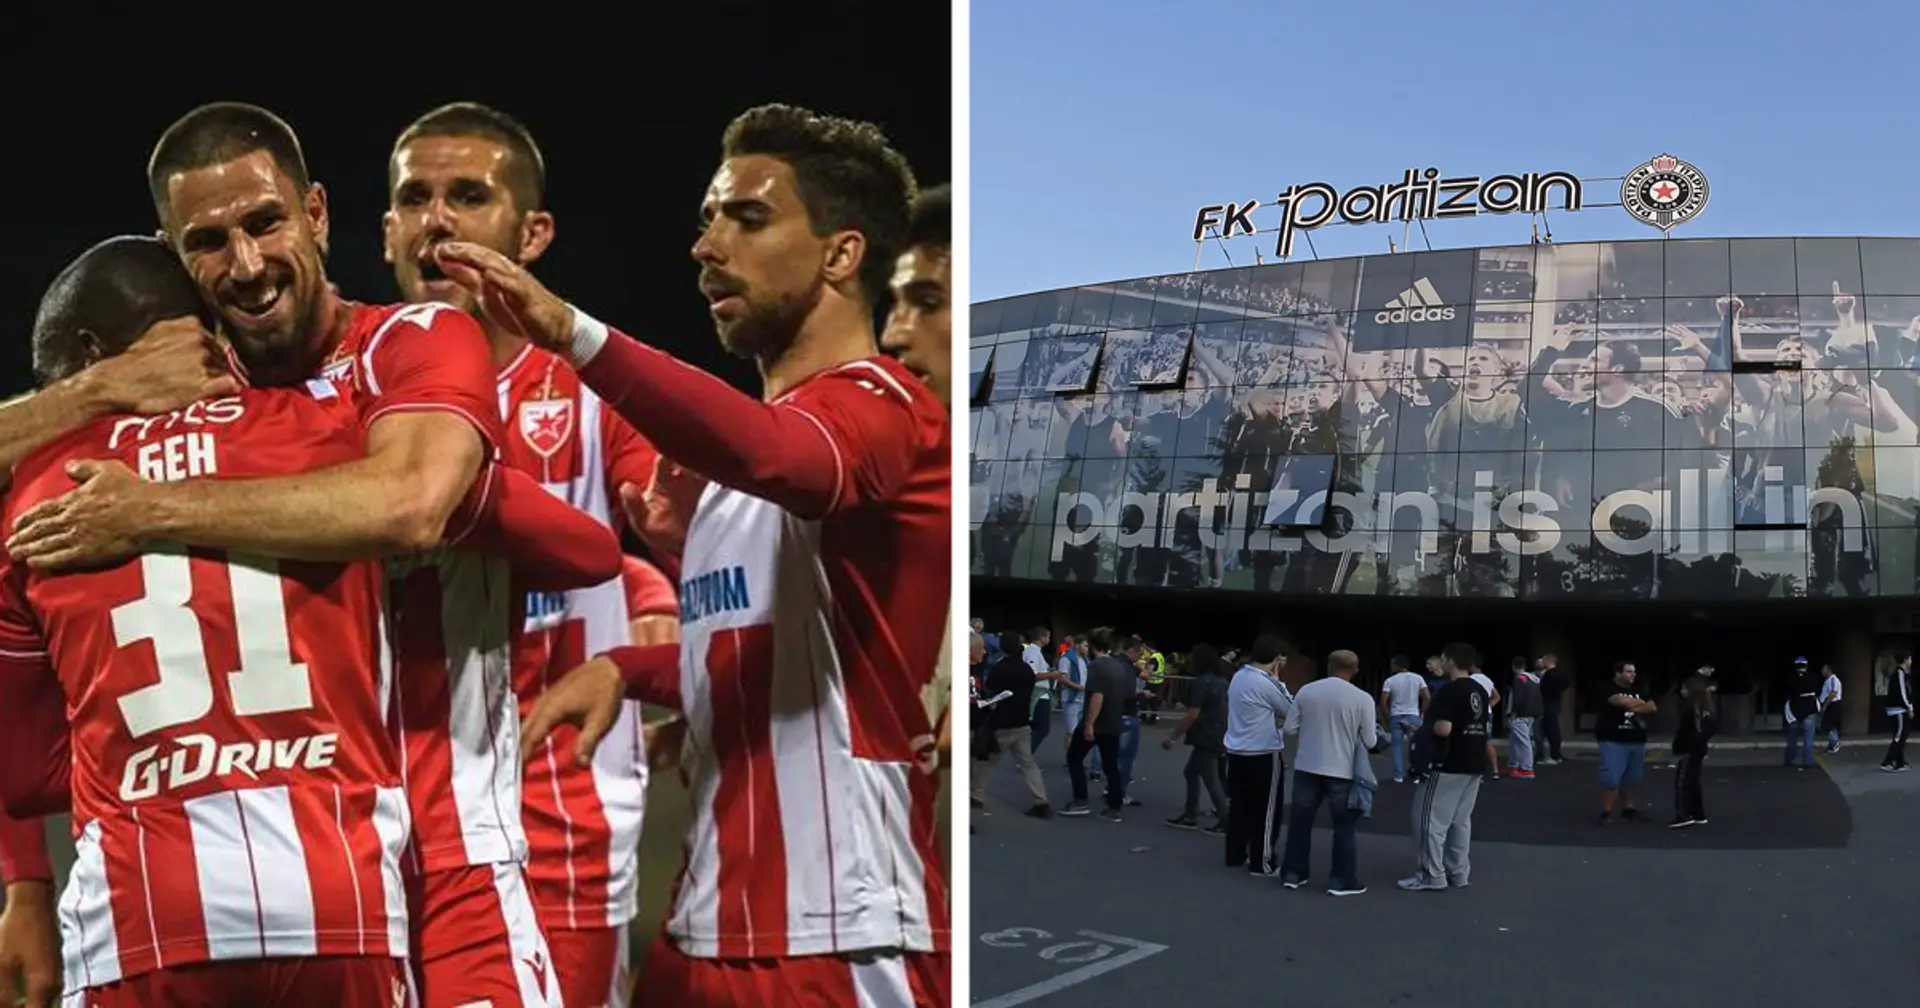 Gli occhi del Milan su Partizan-Stella Rossa: attesi stasera gli osservatori rossoneri per la semifinale di Coppa di Serbia